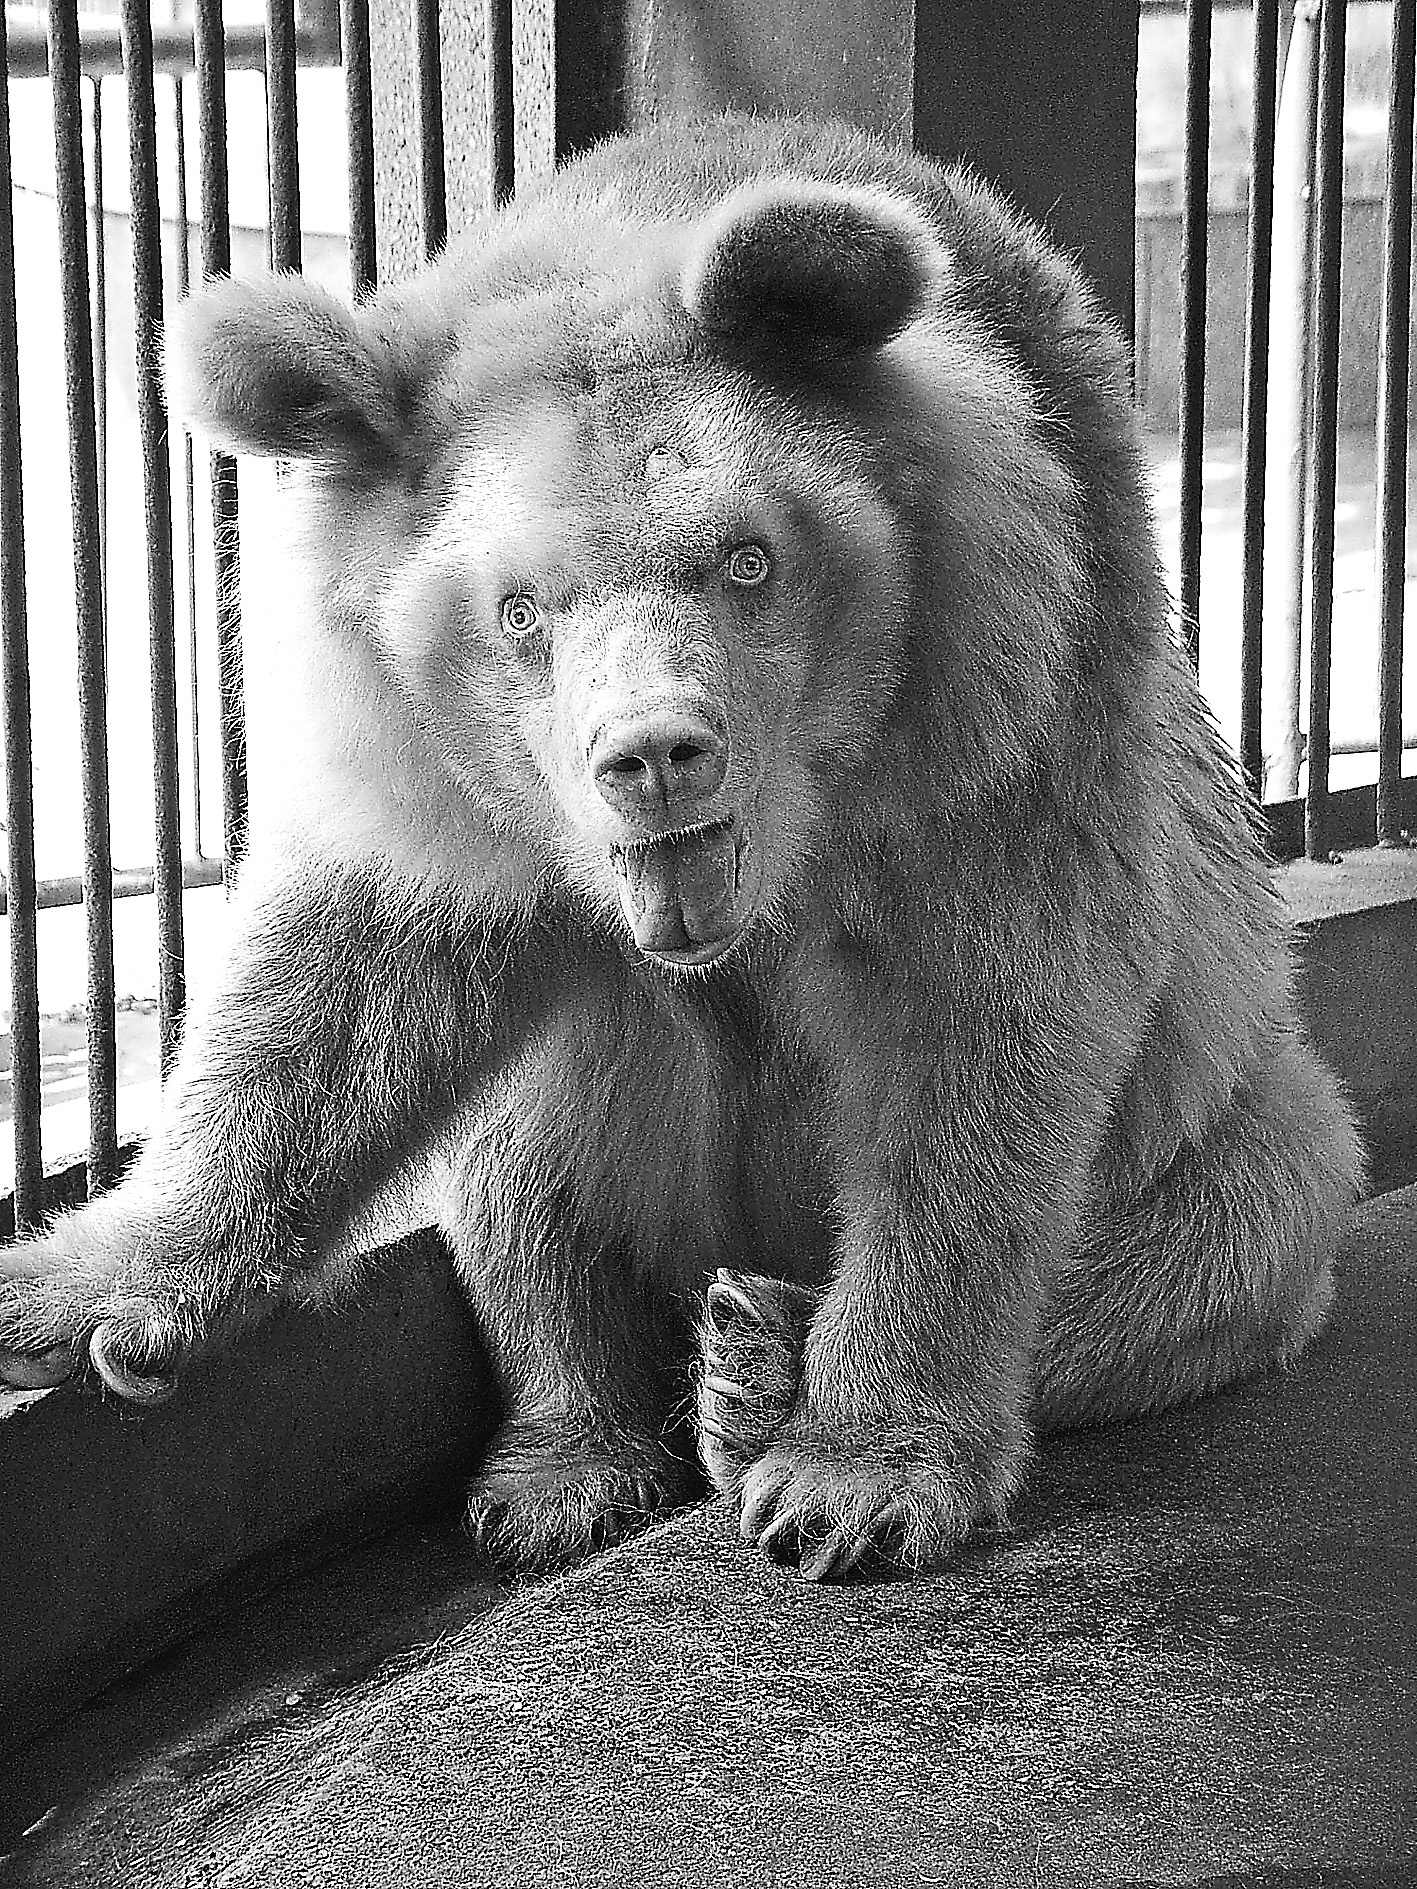 神农架白熊失明动物园呼吁援助(图)